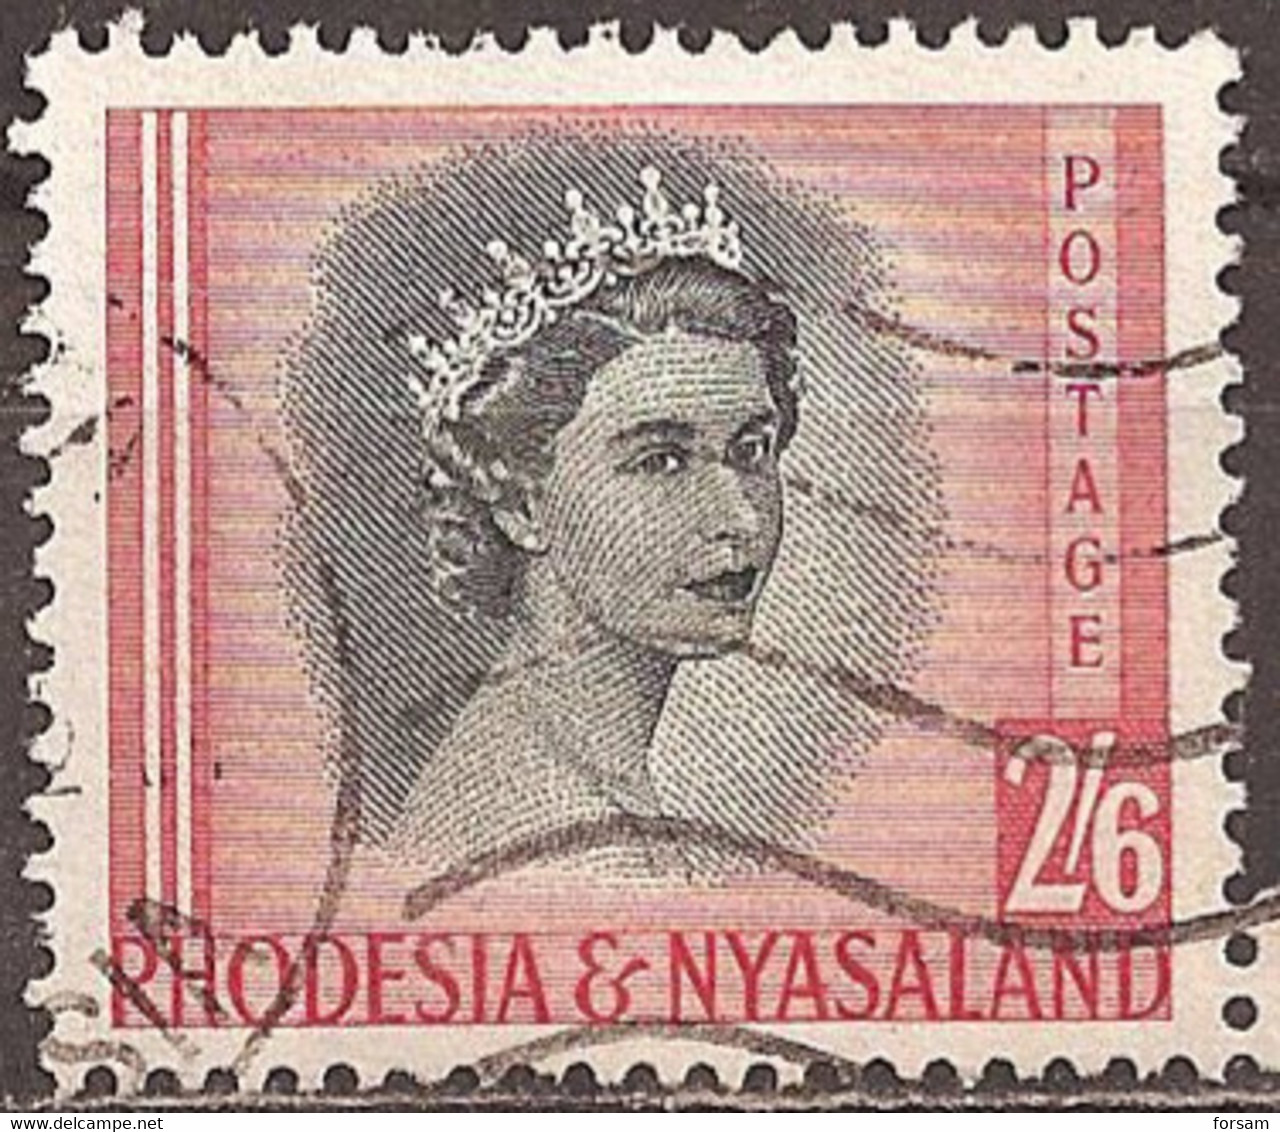 RHODESIA & NYASALAND..1954..Michel # 13...used. - Rhodesia & Nyasaland (1954-1963)